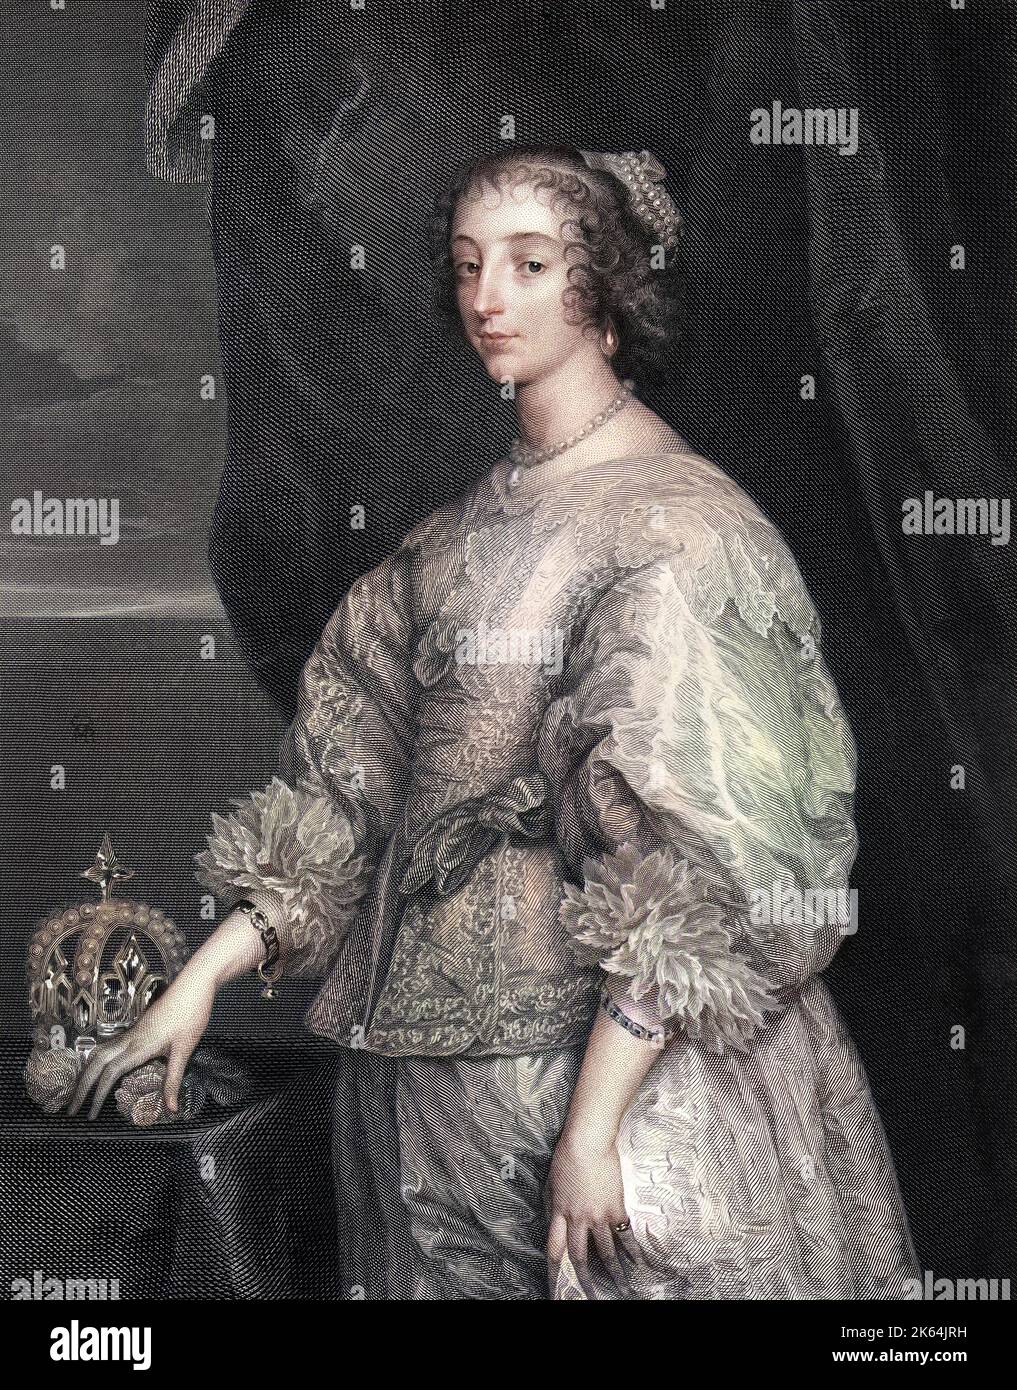 Henrietta Maria (1609-1669) - L'Espagnol épouse du roi Charles I (qu'elle épousa en 1625). Date : vers 1640 Banque D'Images